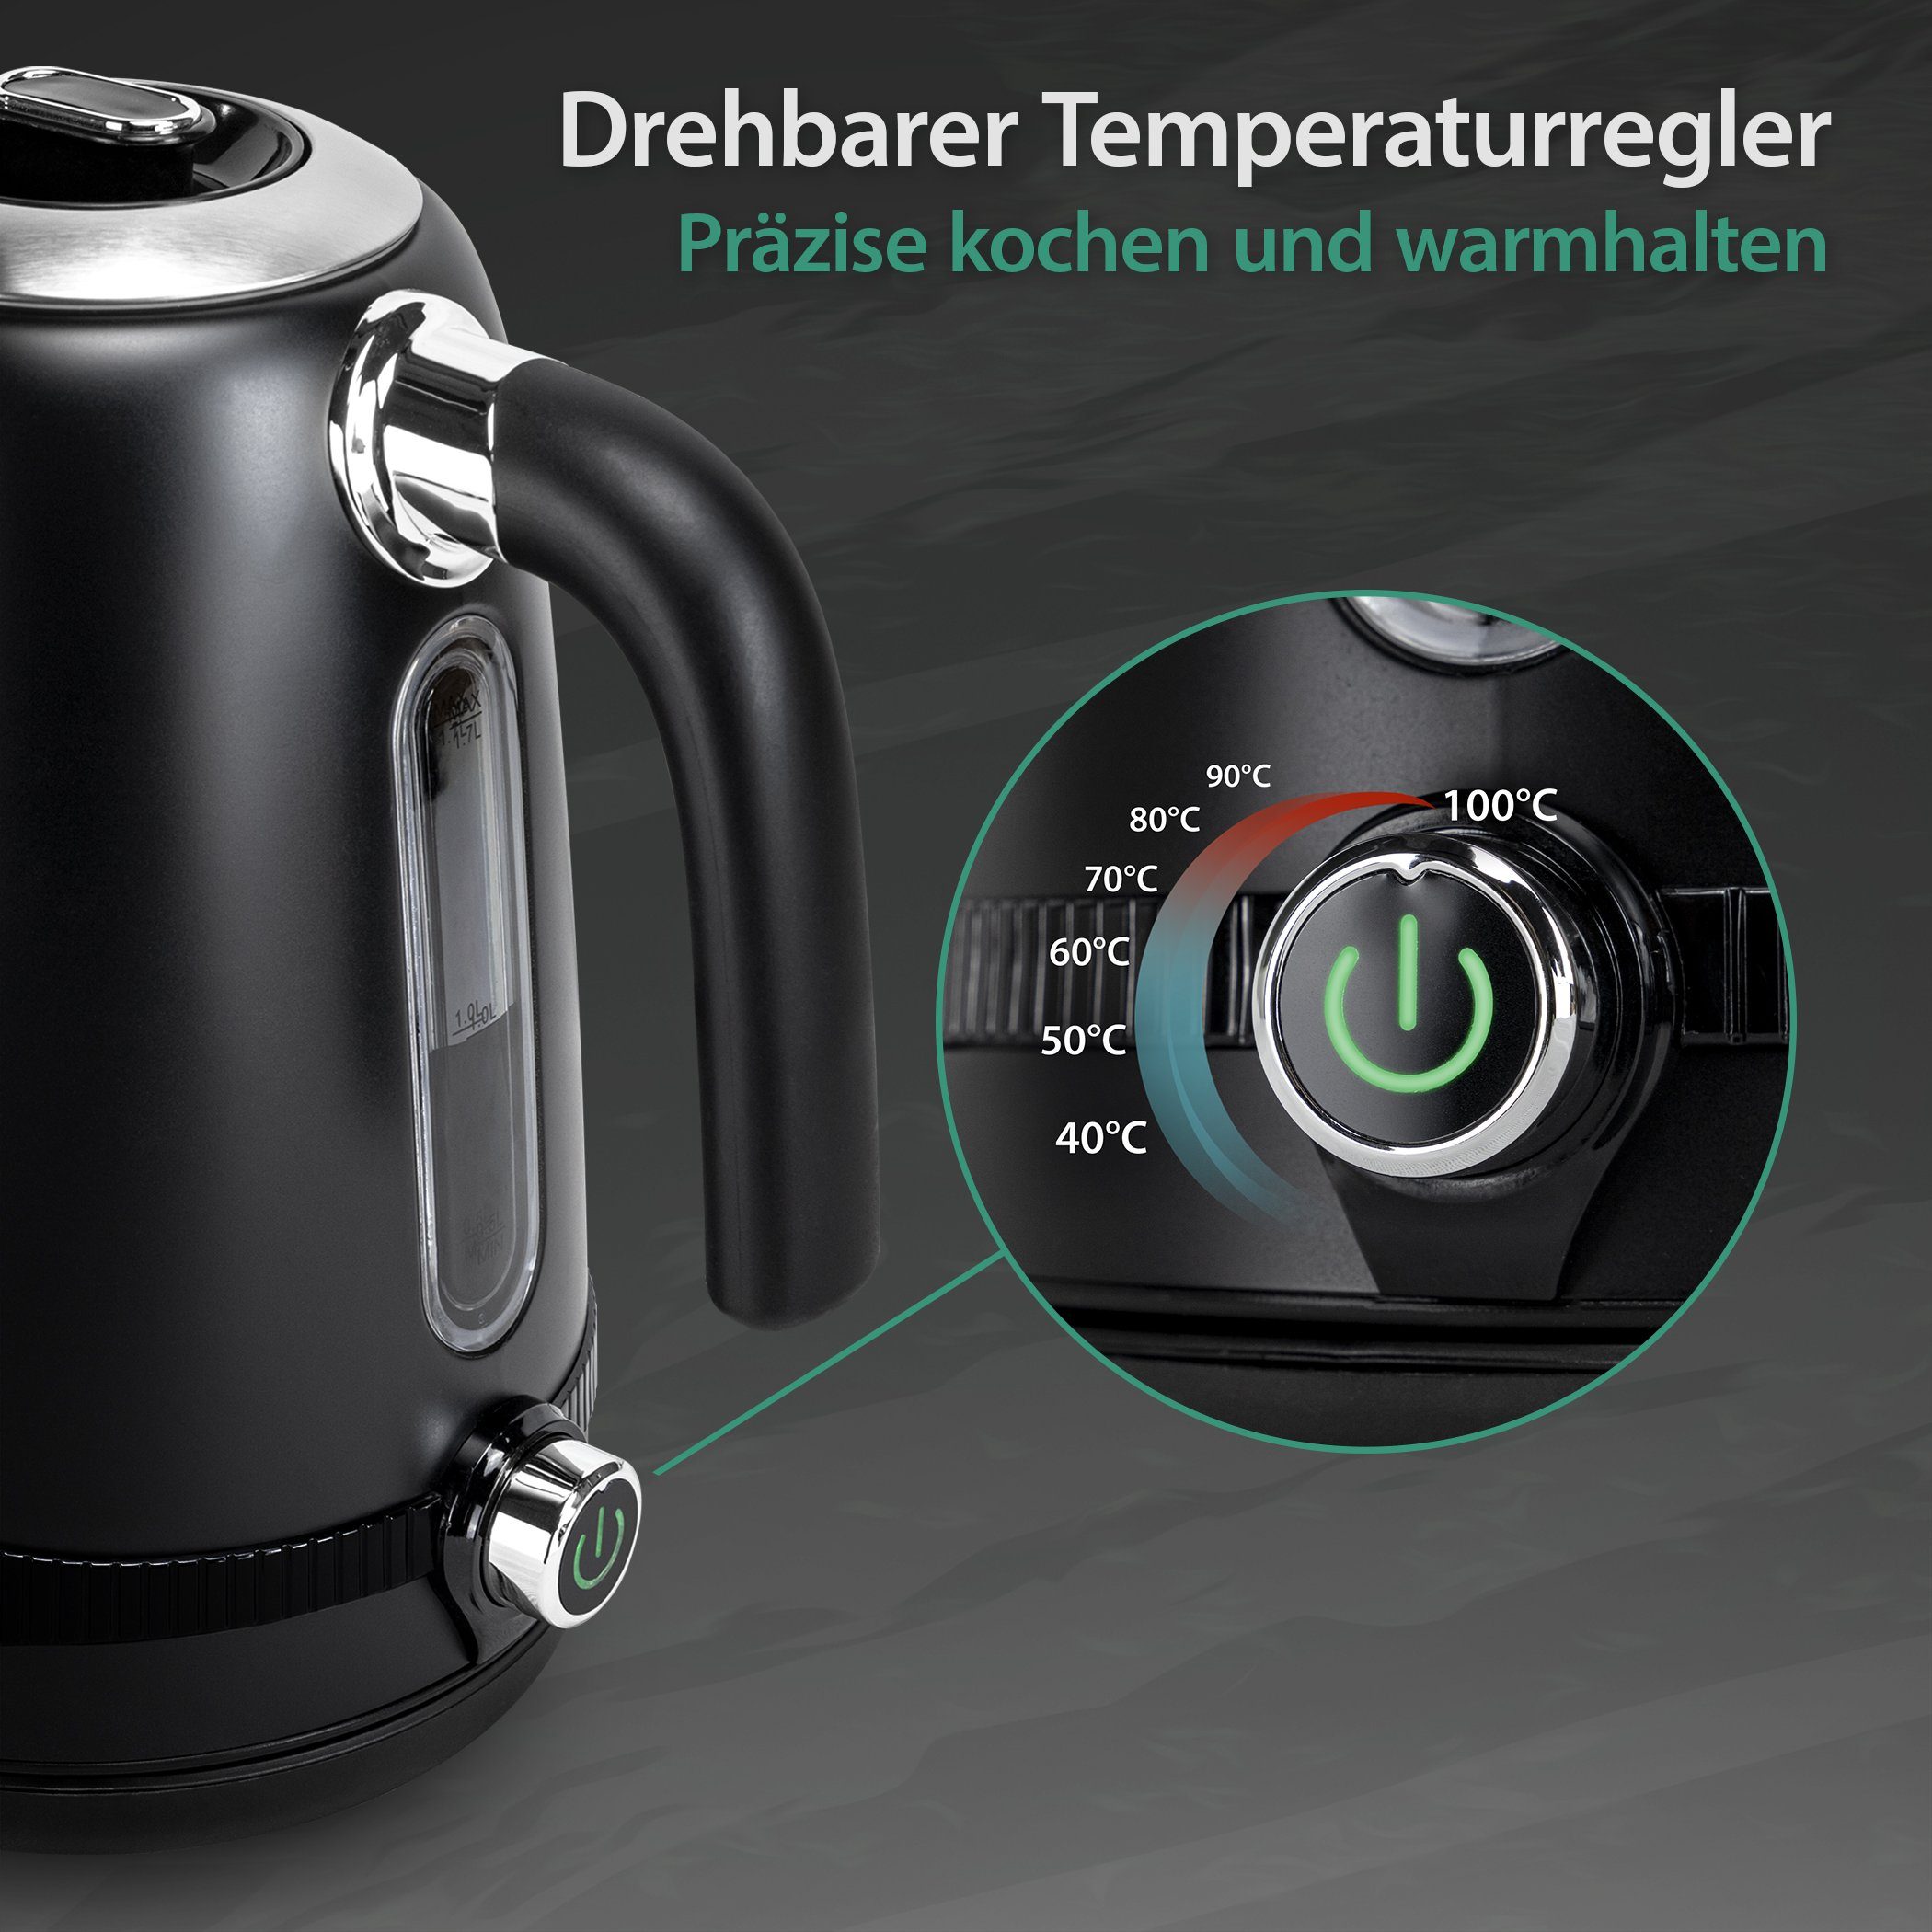 Zertifiziert Wasserkocher Temperatureinstellung, Retro, TÜV Rheinland Impolio Edelstahl, GS W, 2200,00